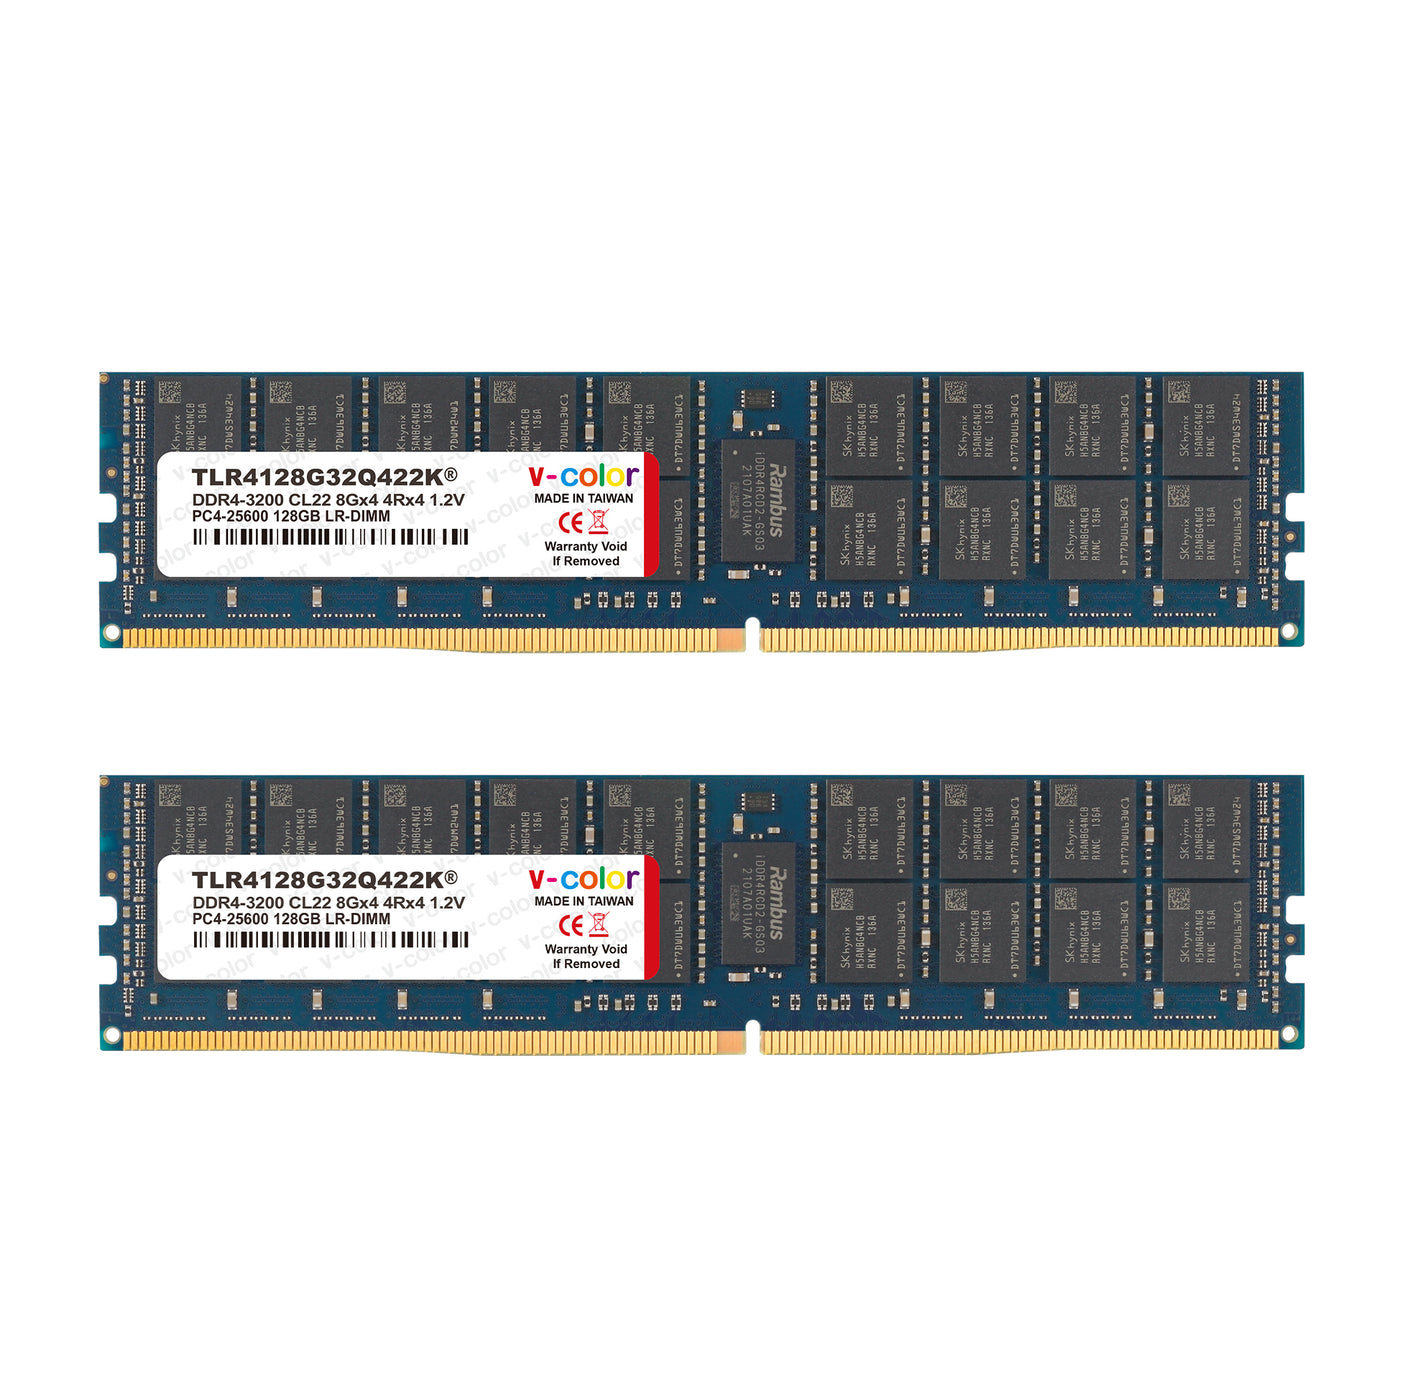 DDR4 | 256 GB (128 GB x 2) | ECC LR-DIMM | Memoria del servidor